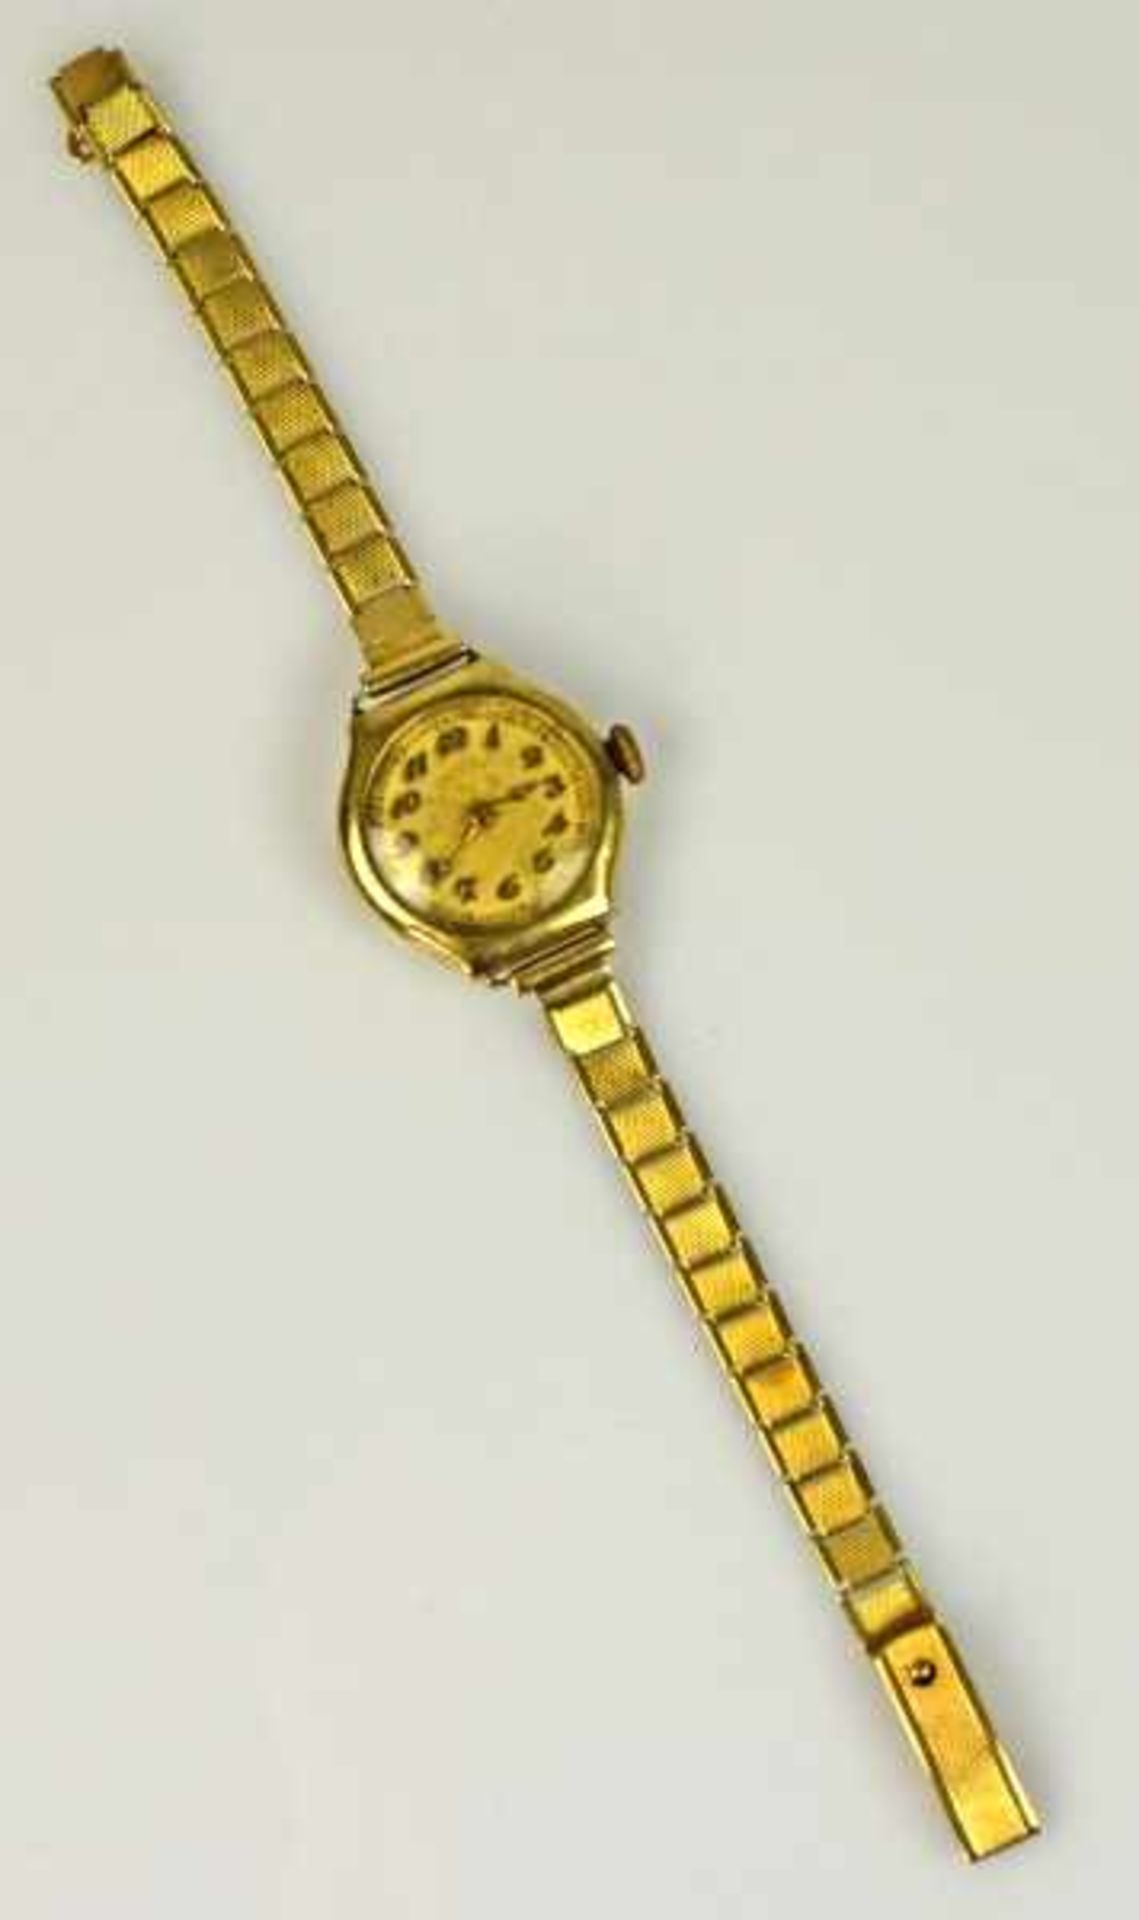 DAMENARMBANDUHR Handaufzug, rundes Gelbgoldgehäuse mit Gliederarmband, beide Gold 14ct, - Image 2 of 2